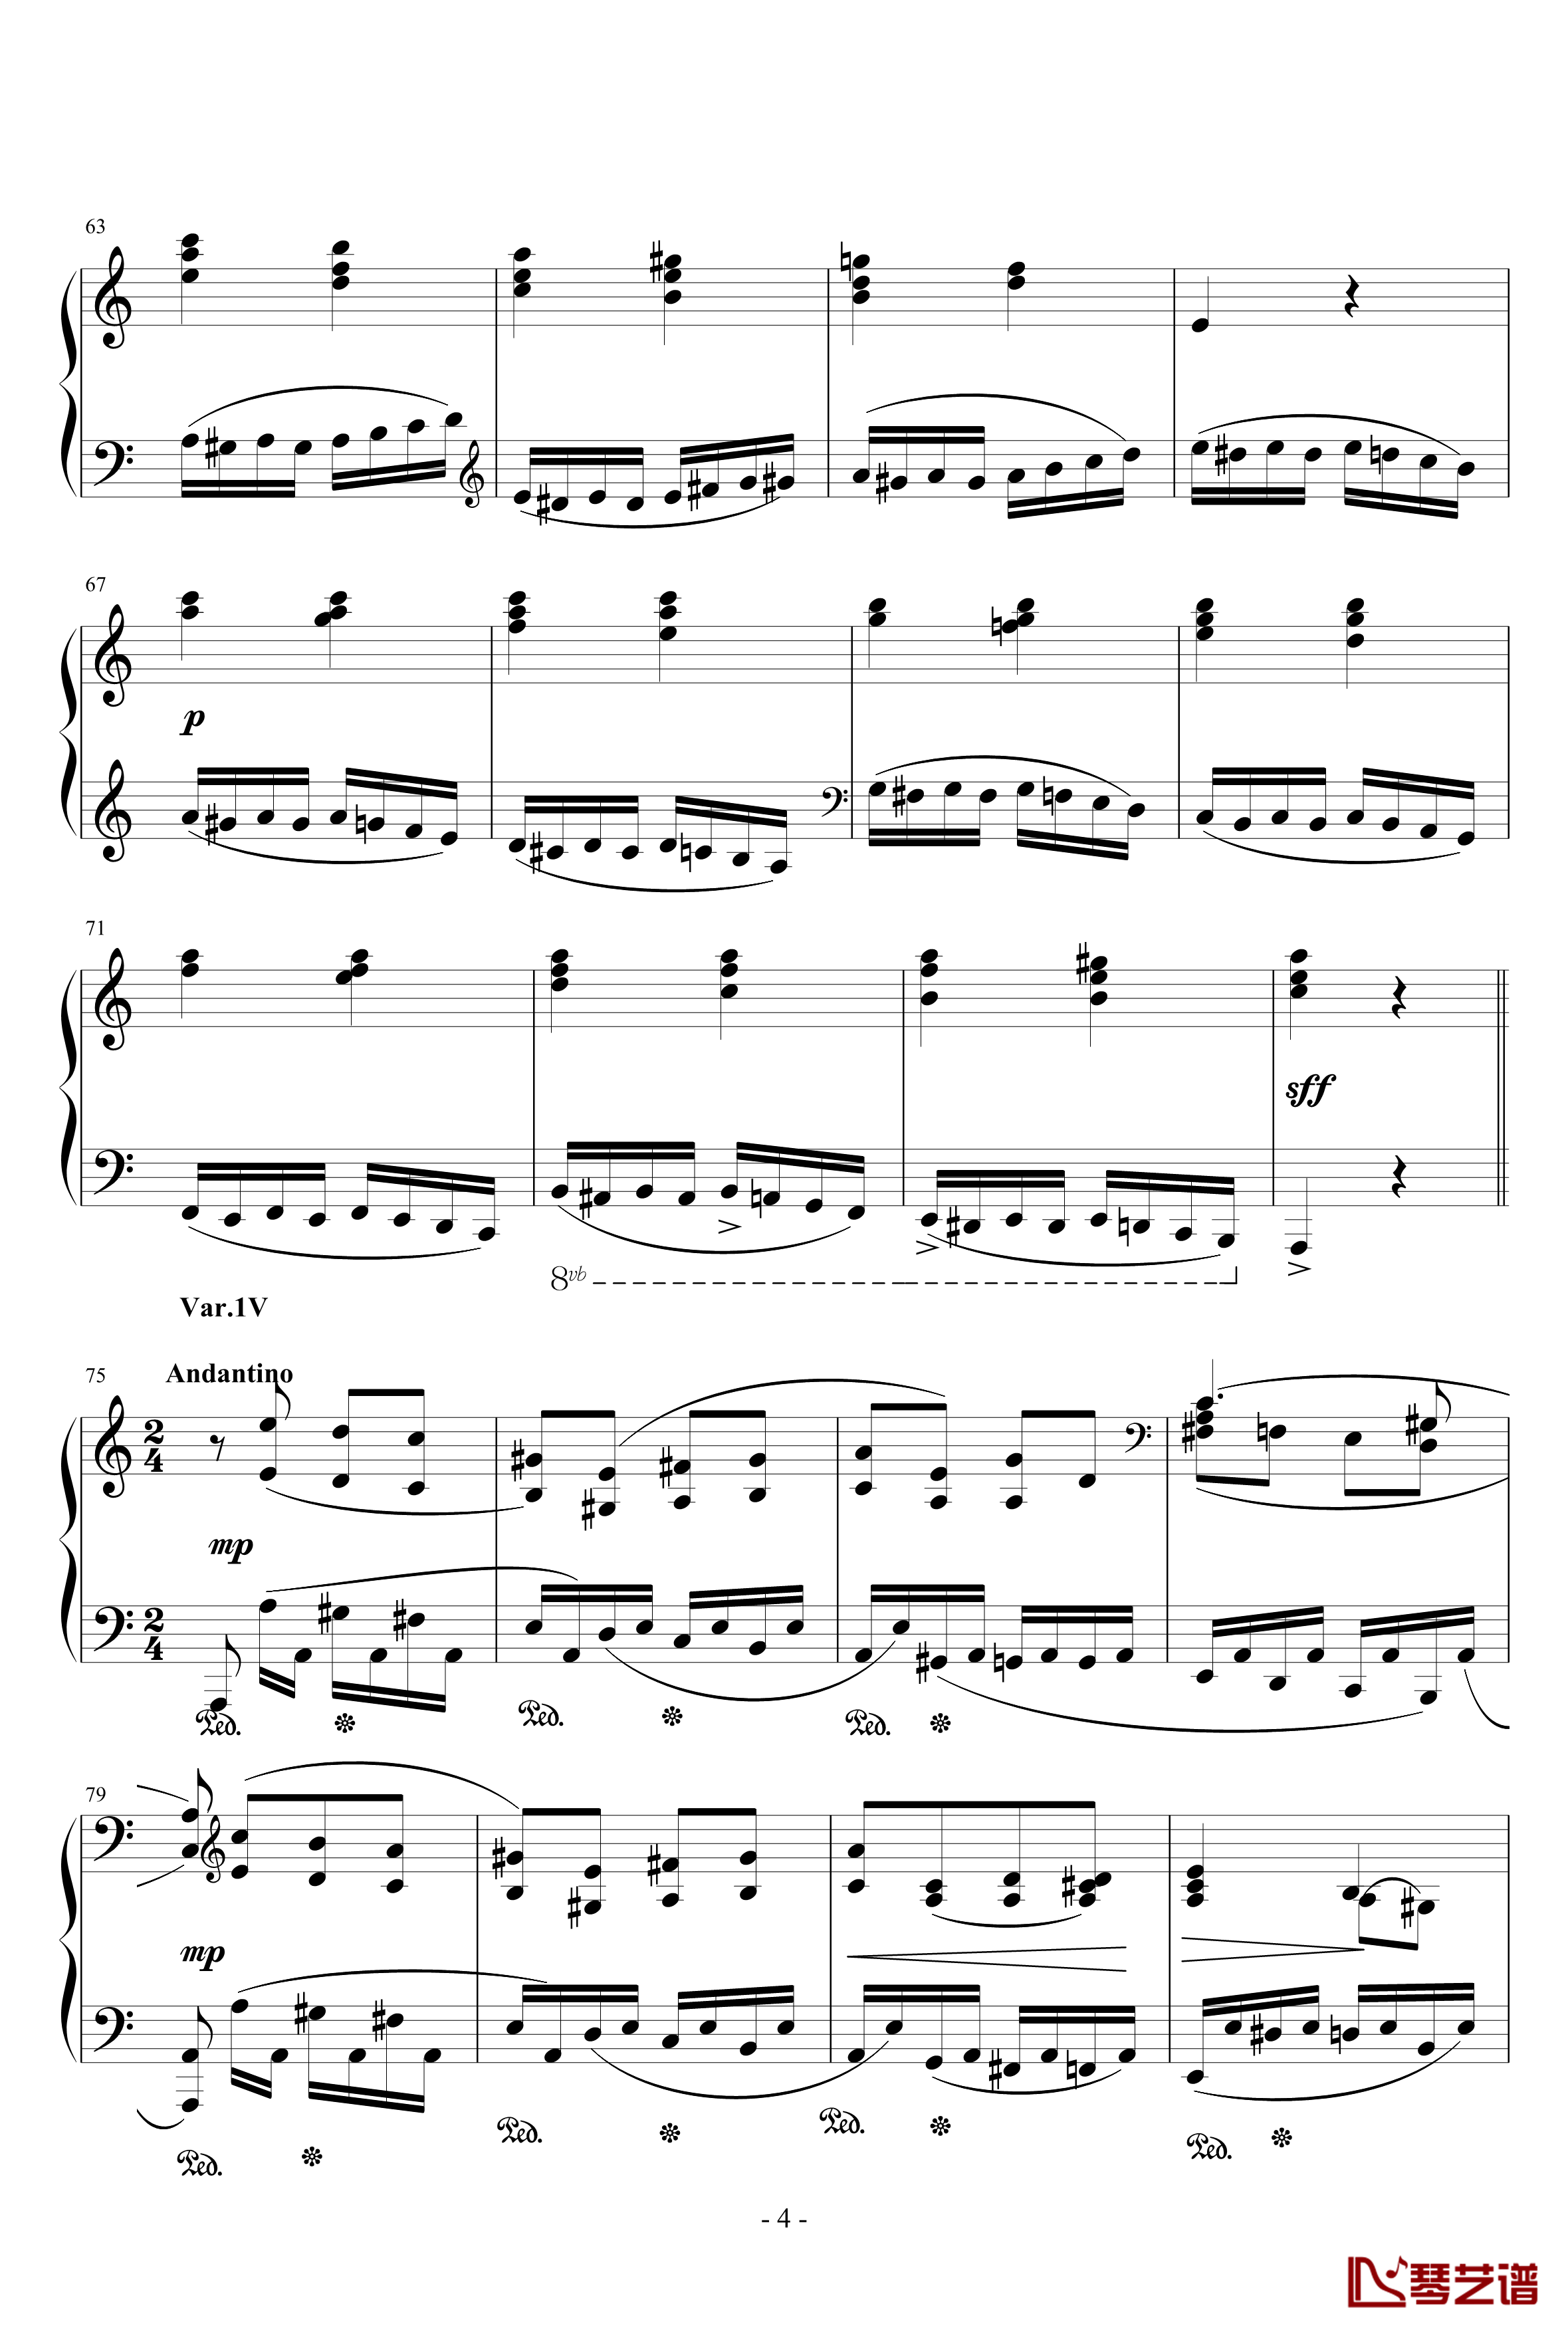 帕格尼尼主题变奏曲钢琴谱-别尔科维奇4